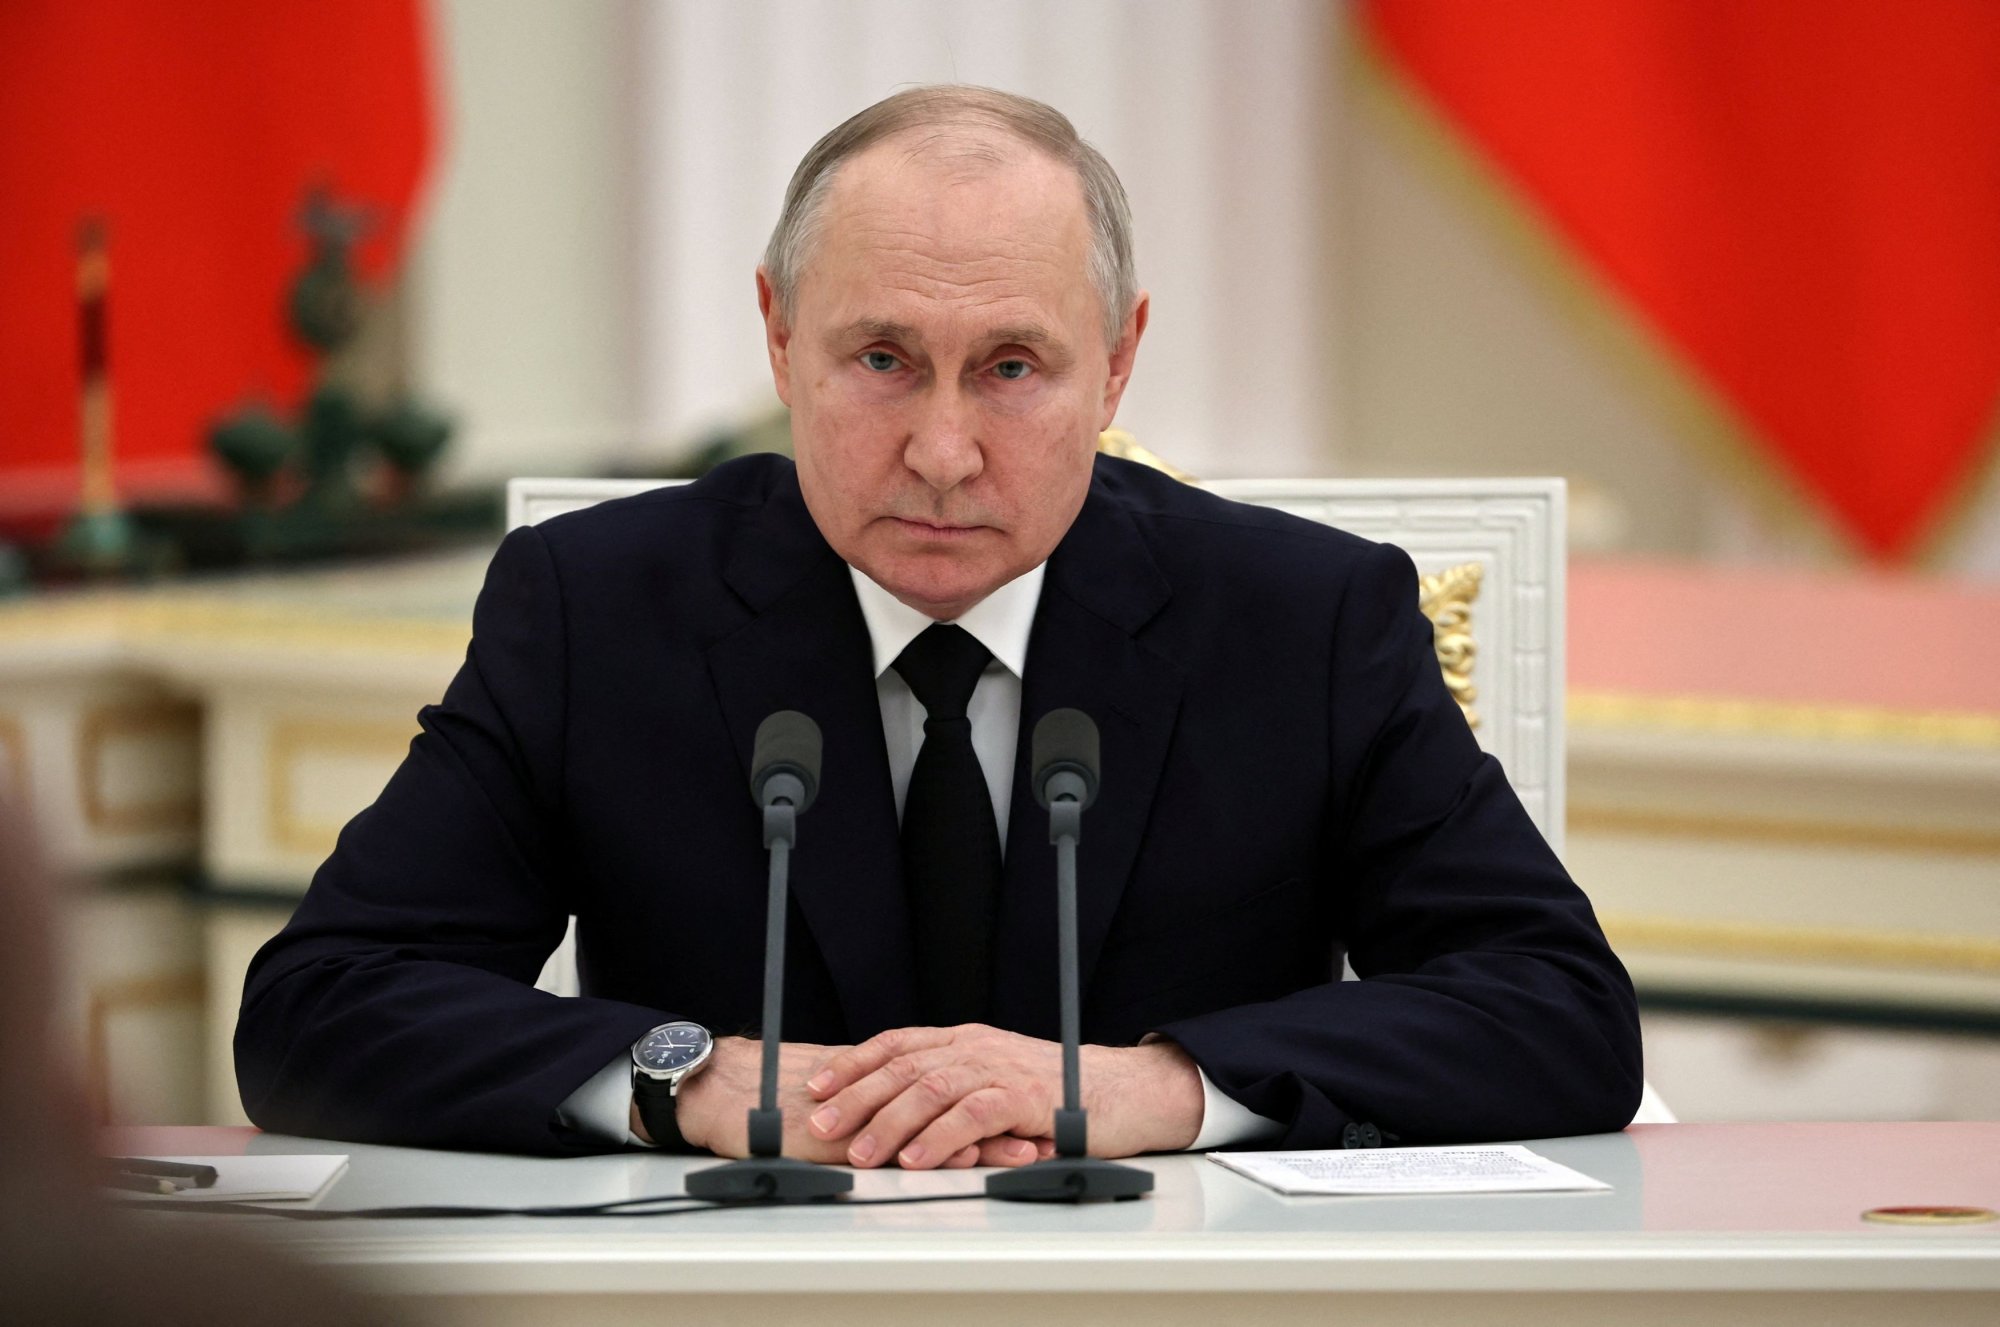 Πούτιν: «Ηλίθιοι και νεοφασίστες» οι Ουκρανοί ηγέτες - Υποκριτική η στάση της Μόσχας για τον πόλεμο στη Γάζα;